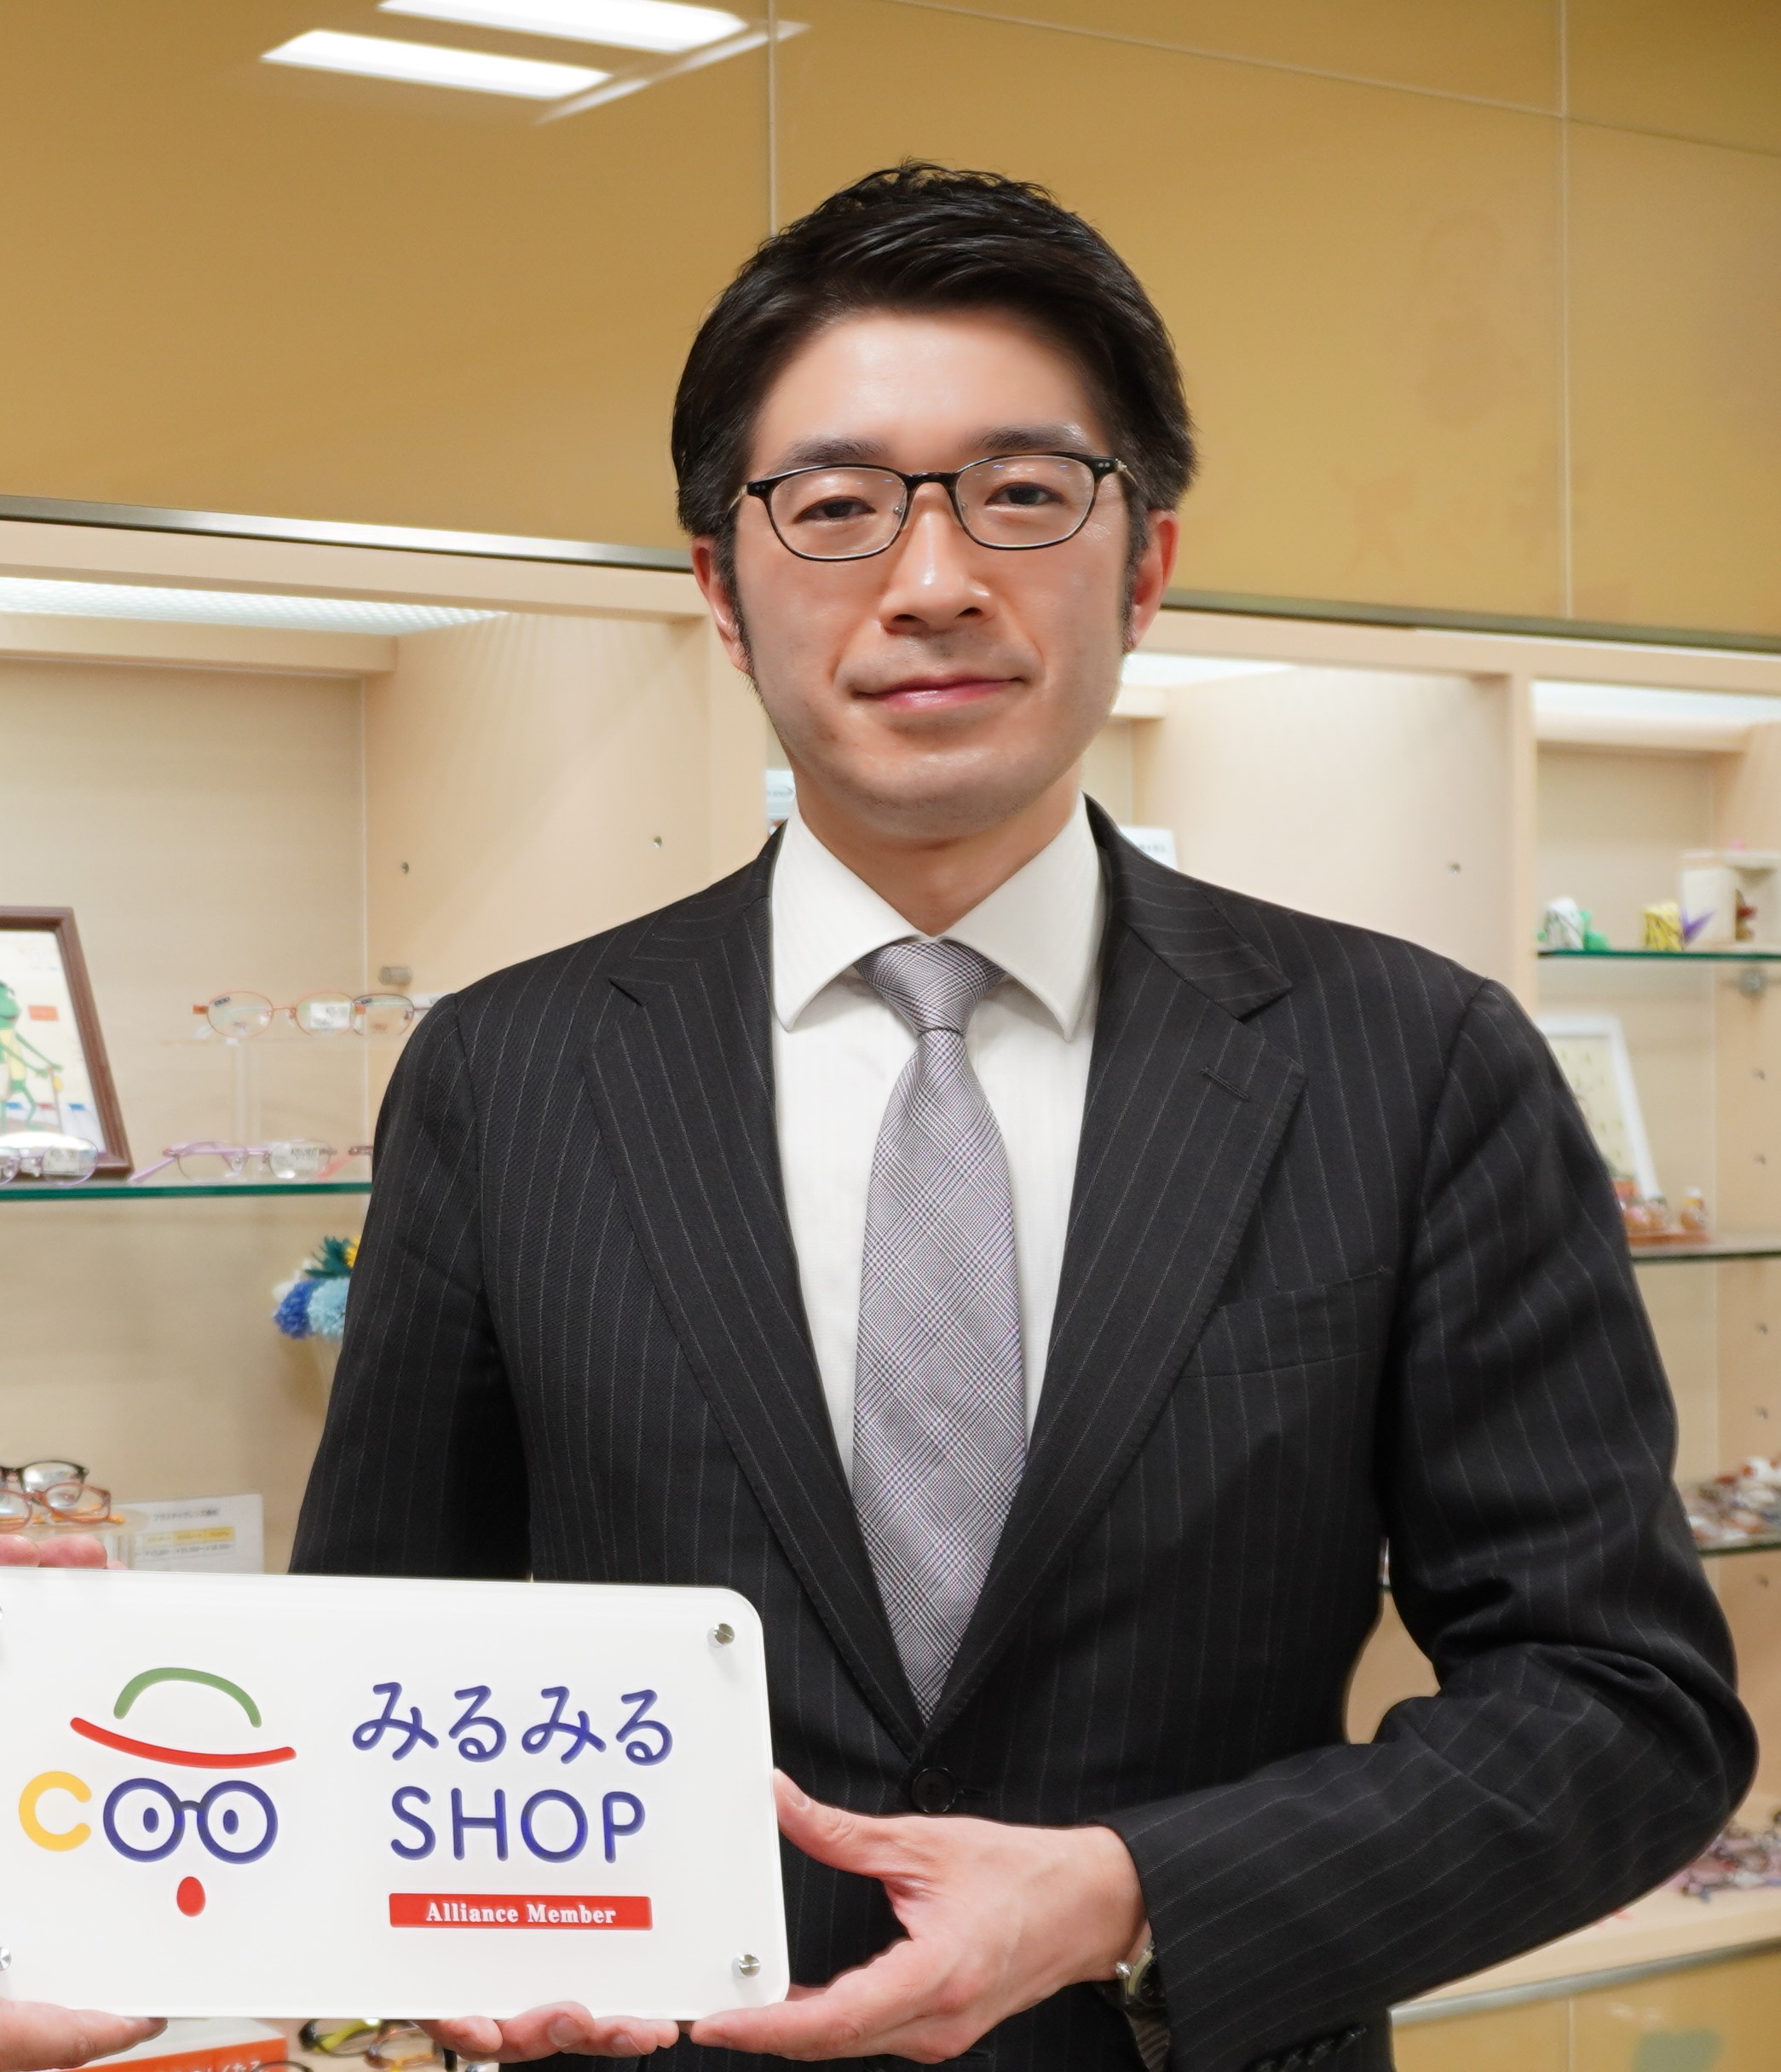 熊本メガネの大宝堂、子どもの眼守り育てる「みるみるSHOP」に加盟